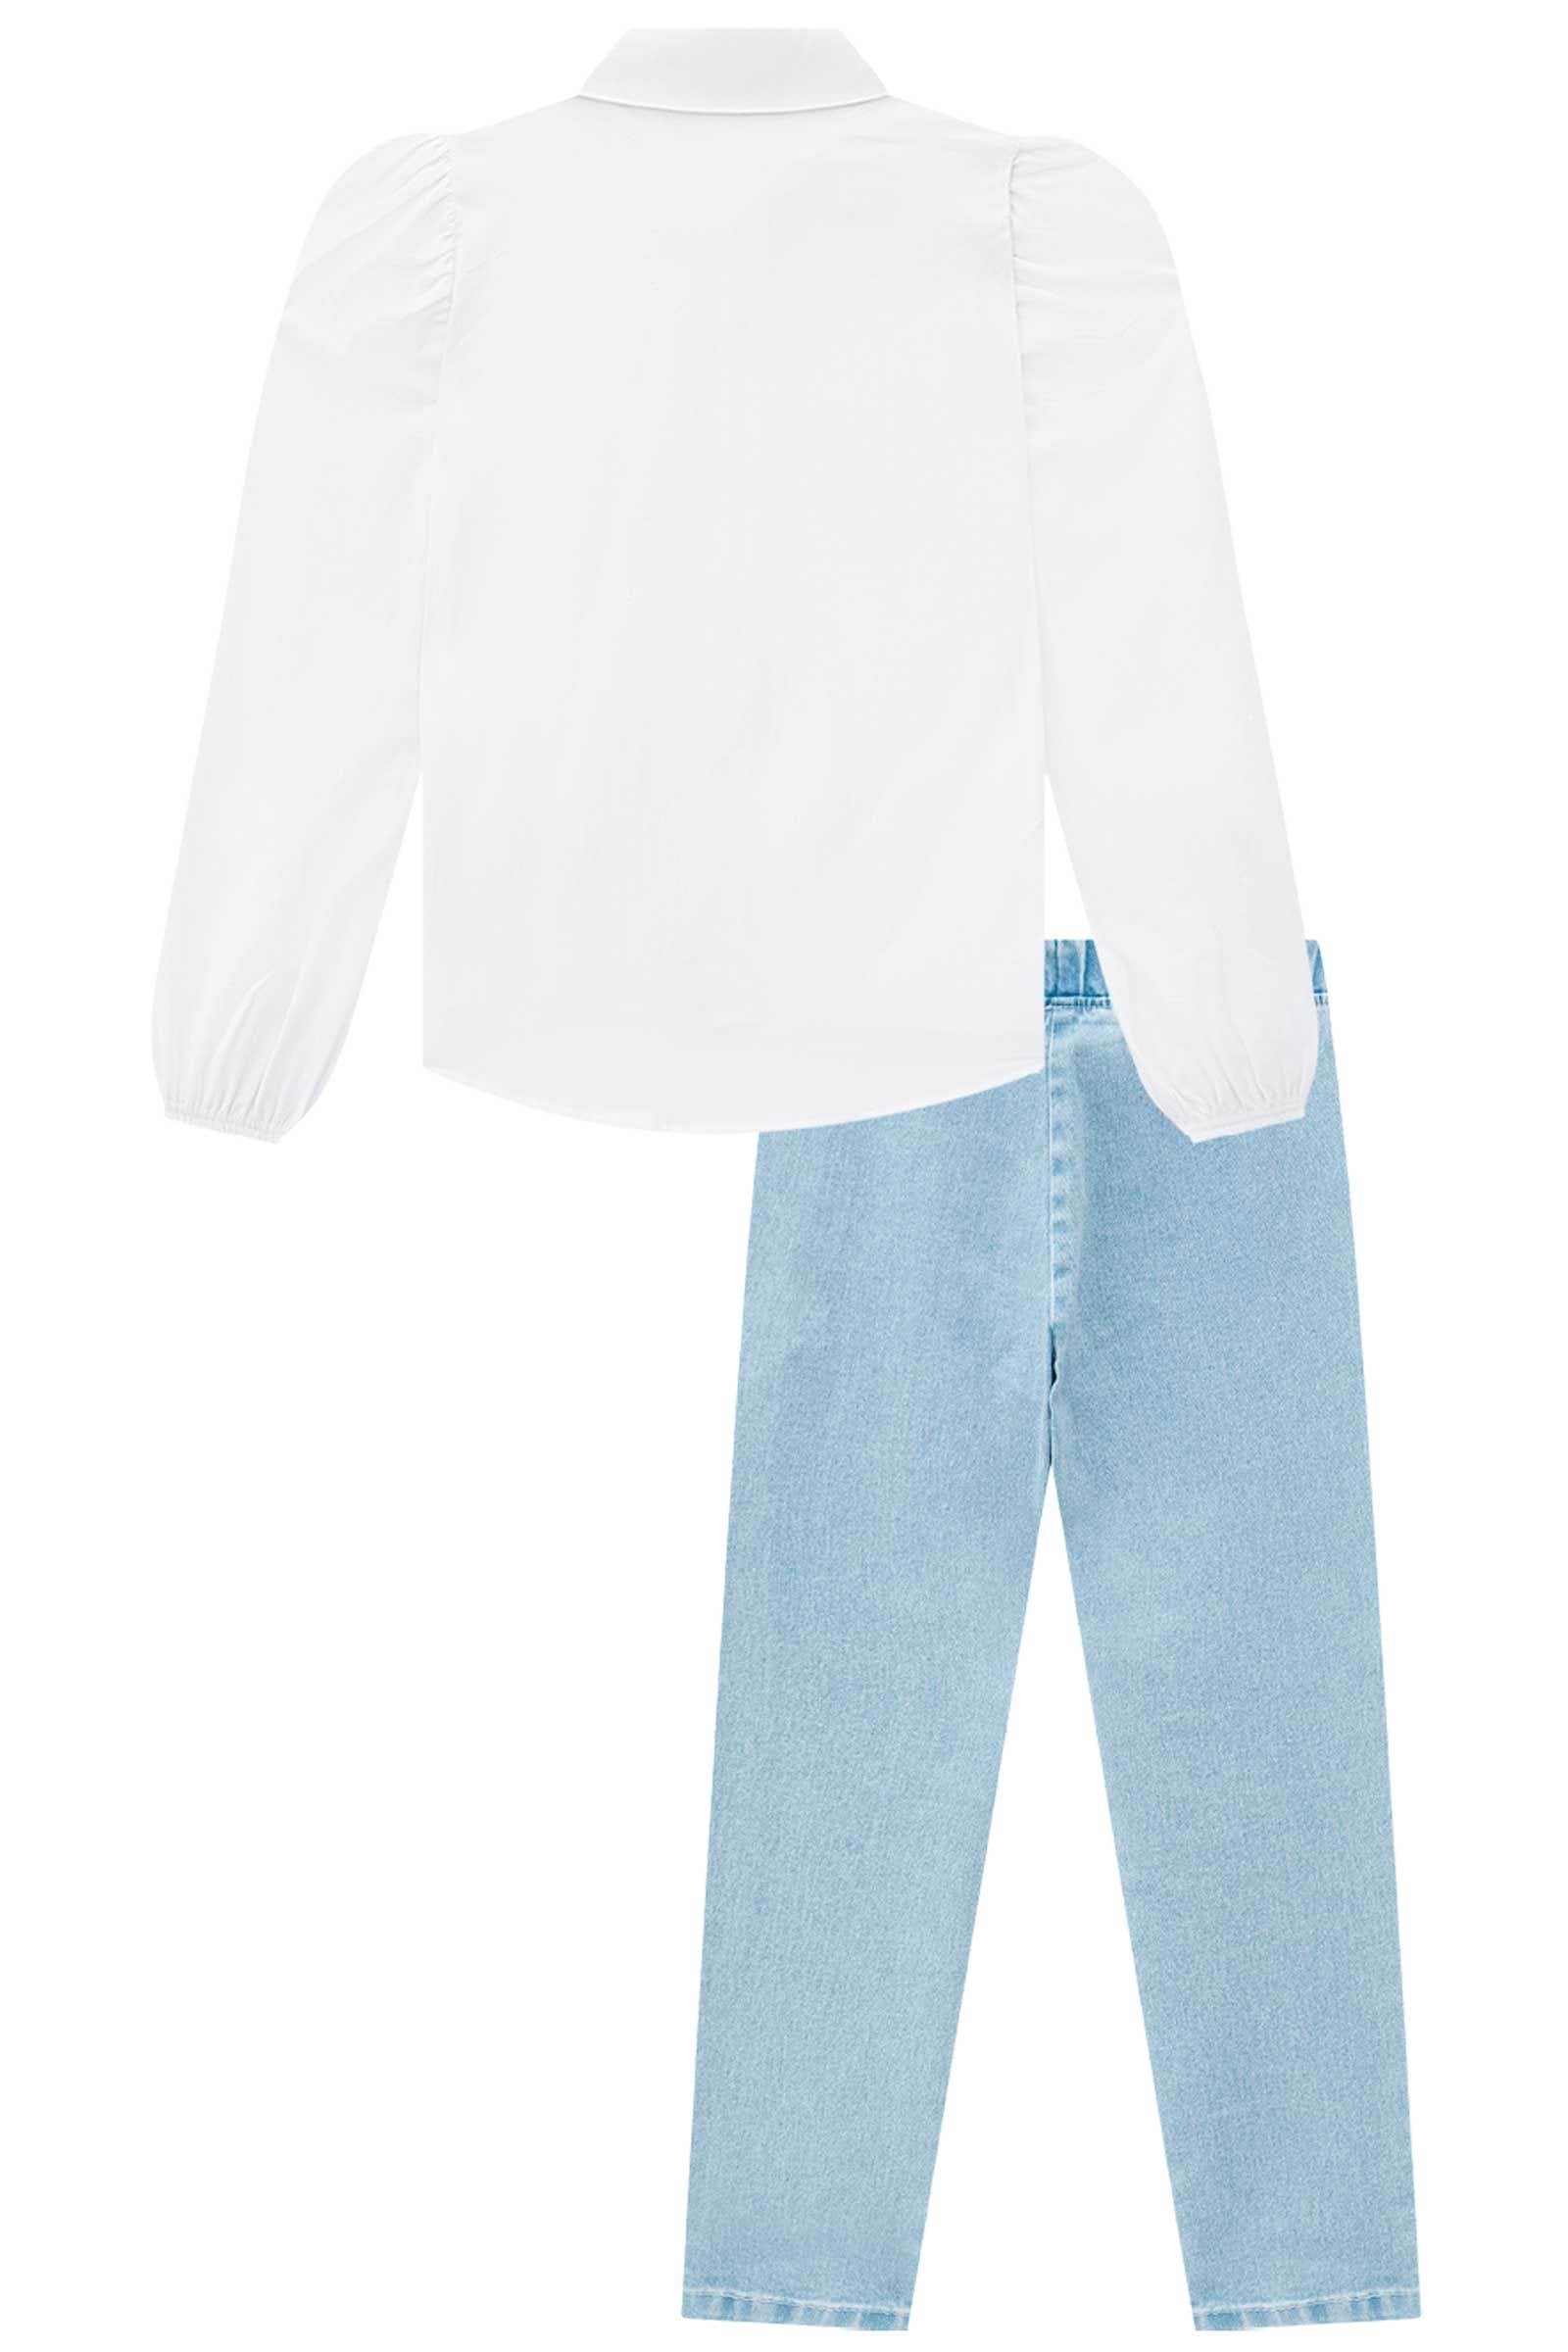 Conjunto de Camisa em Viscose com Calça em Jeans Bellini com Elastano 68761 Infanti